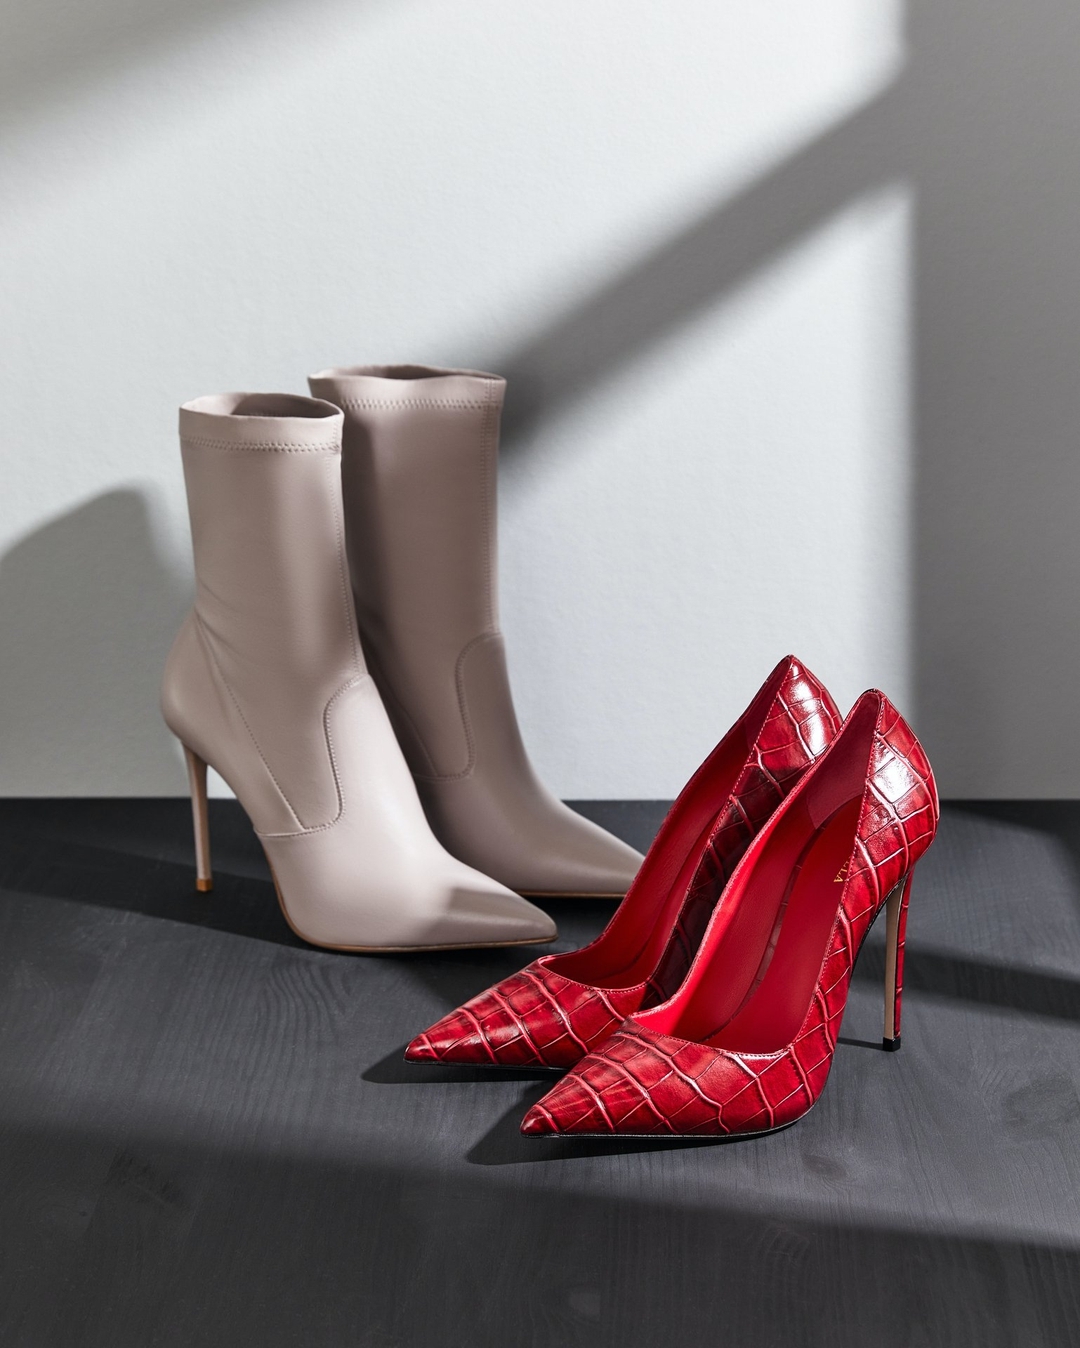 Мода на каждый день - Новый бренд на Lamoda!
⠀
Итальянская обувь на каблуке и не только от Le Silla. Если вы забыли как выглядит настоящая, острая, точеная и смелая шпилька — только посмотрите: www....